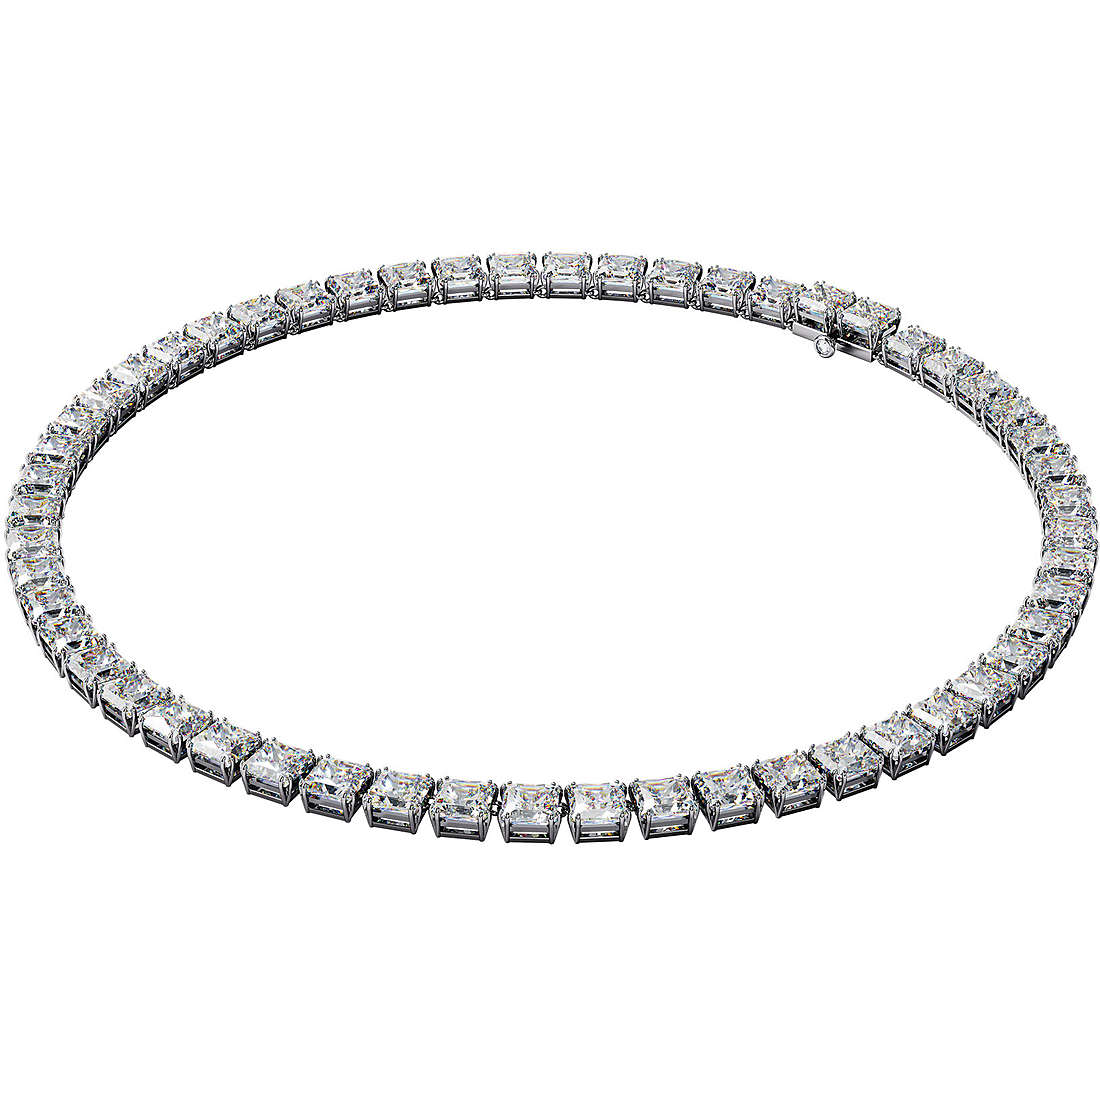 necklace woman jewellery Swarovski Millenia 5599153